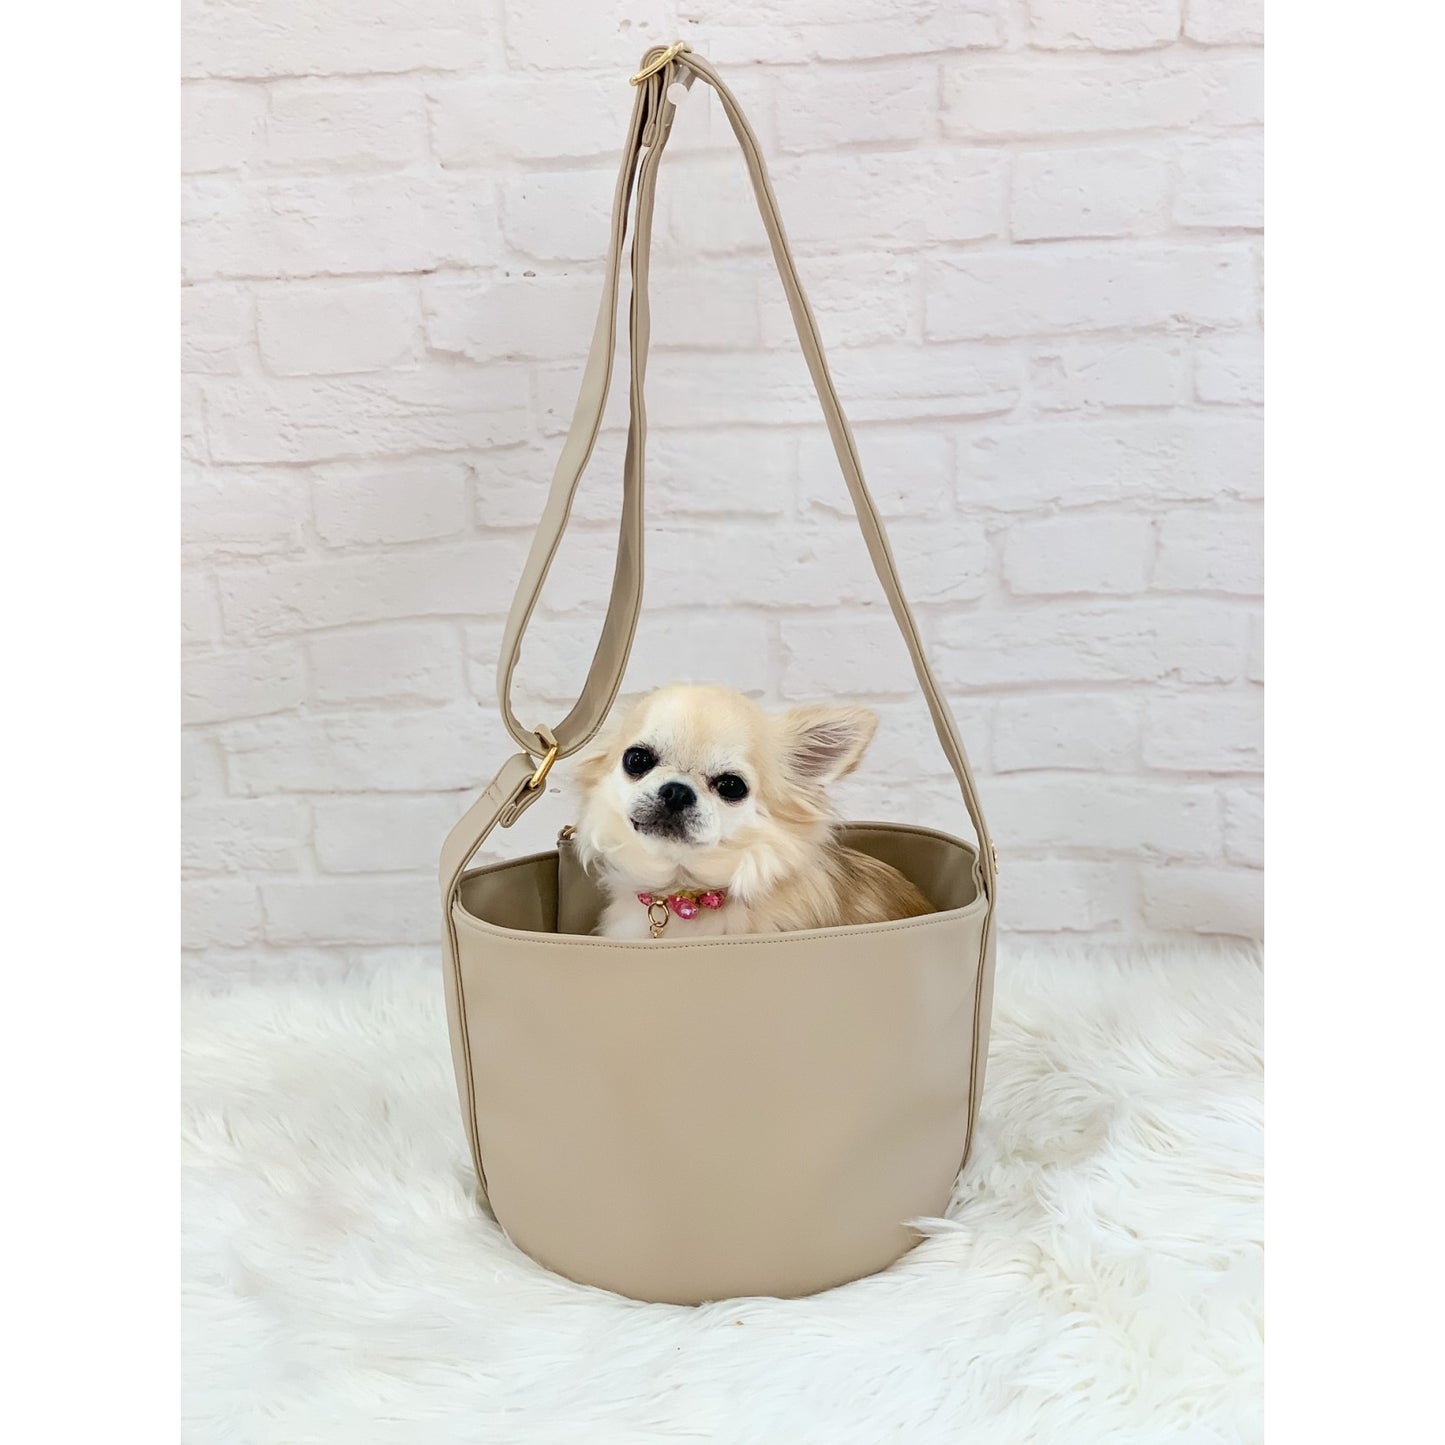 For Pets Only Greige Bag Bucket Bag